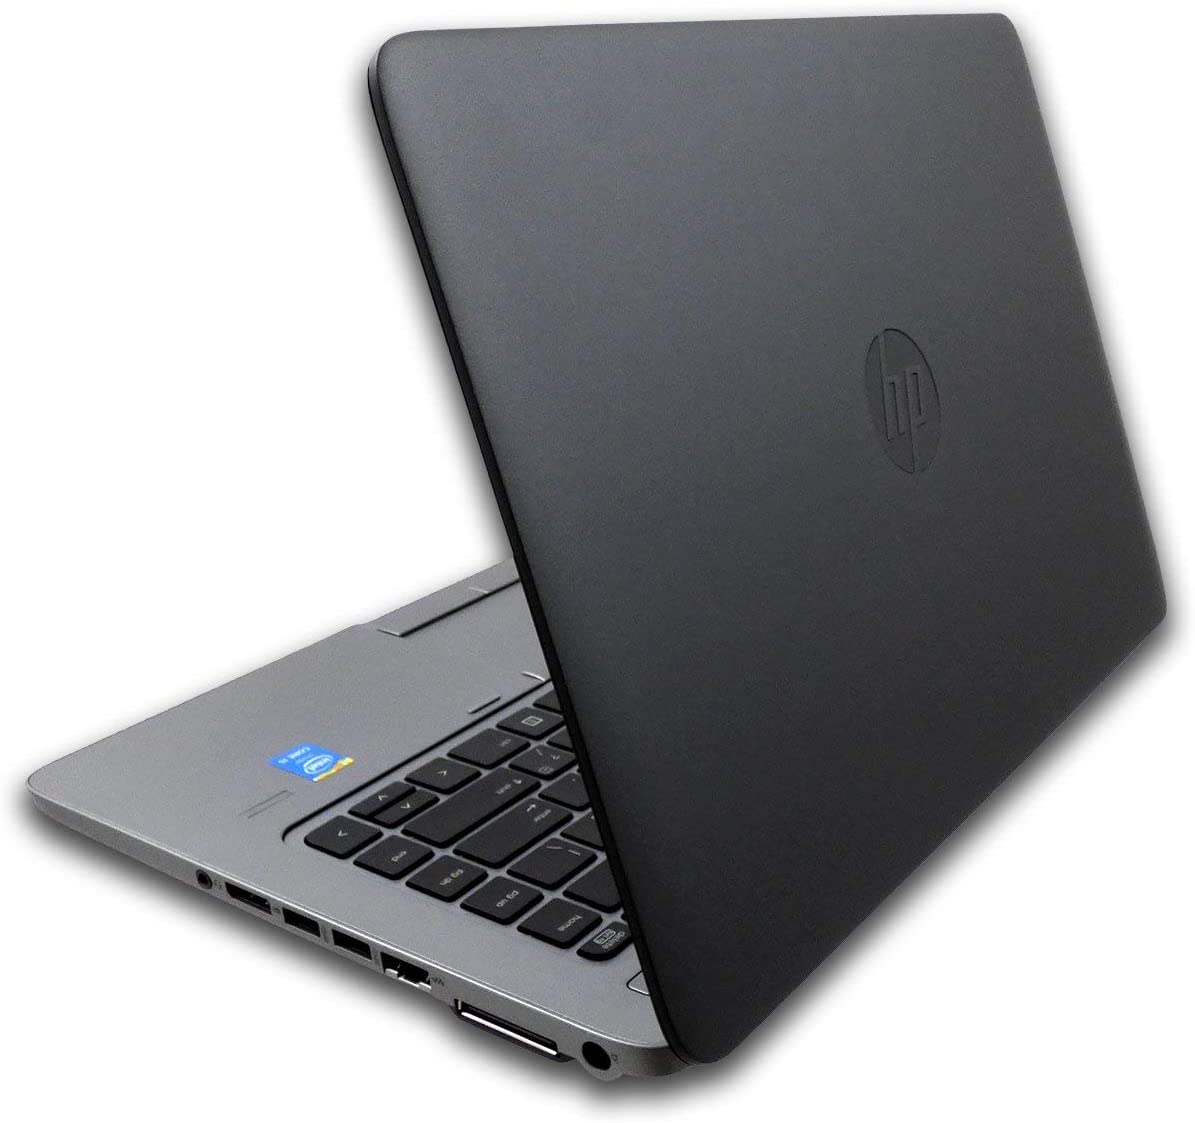 HP EliteBook 840 G2 14" i5-5200U 8GB / 16GB 256GB / 512GB SSD  Windows 10 Pro Laptop Computer (Renewed)